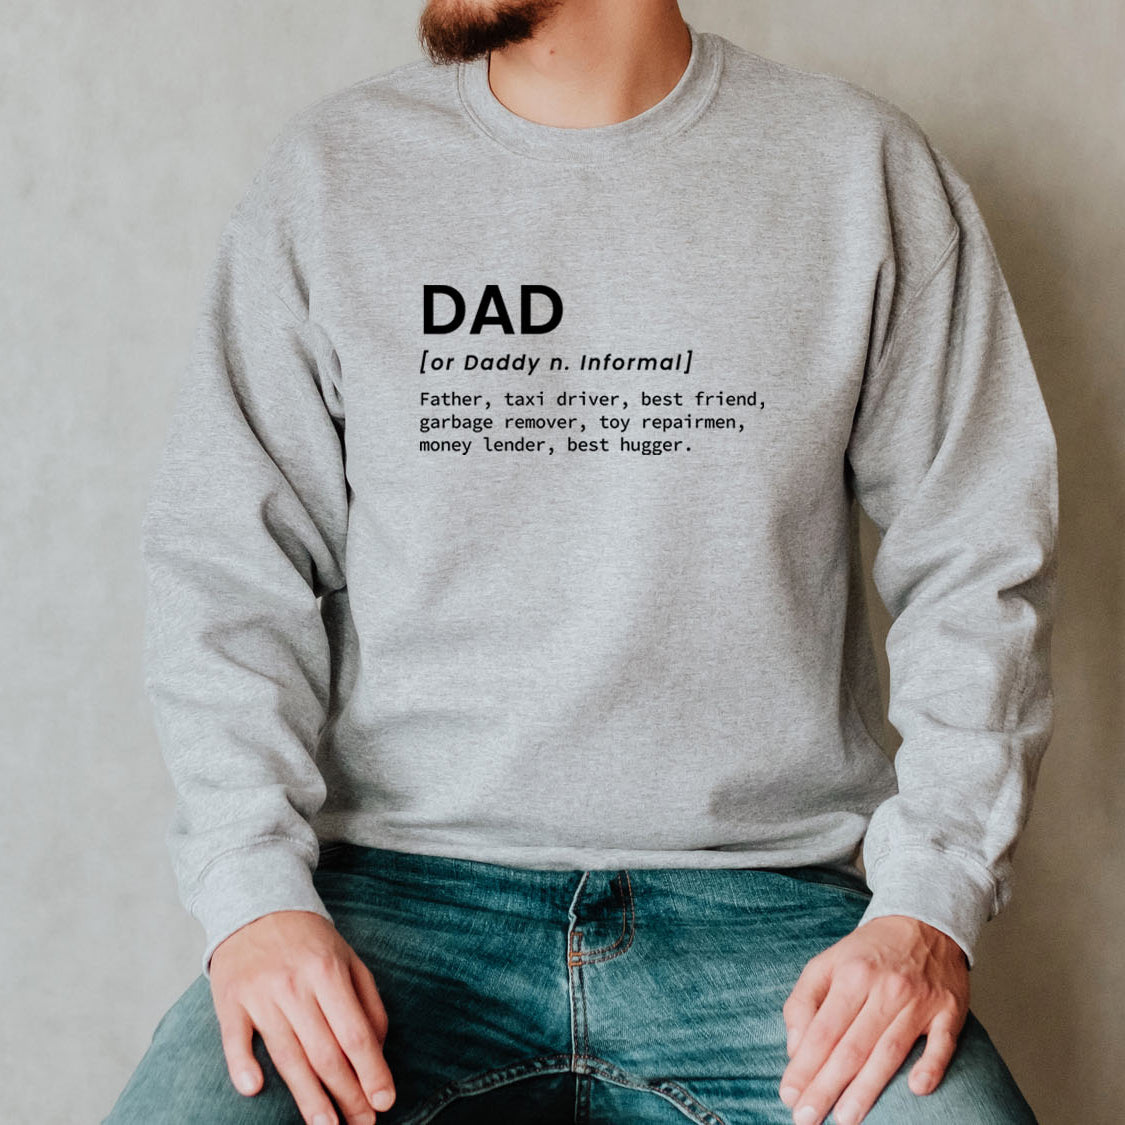 Funny Definition of Dad Sweatshirt - Funny Family Retro Vintage Design Printed Sweatshirt